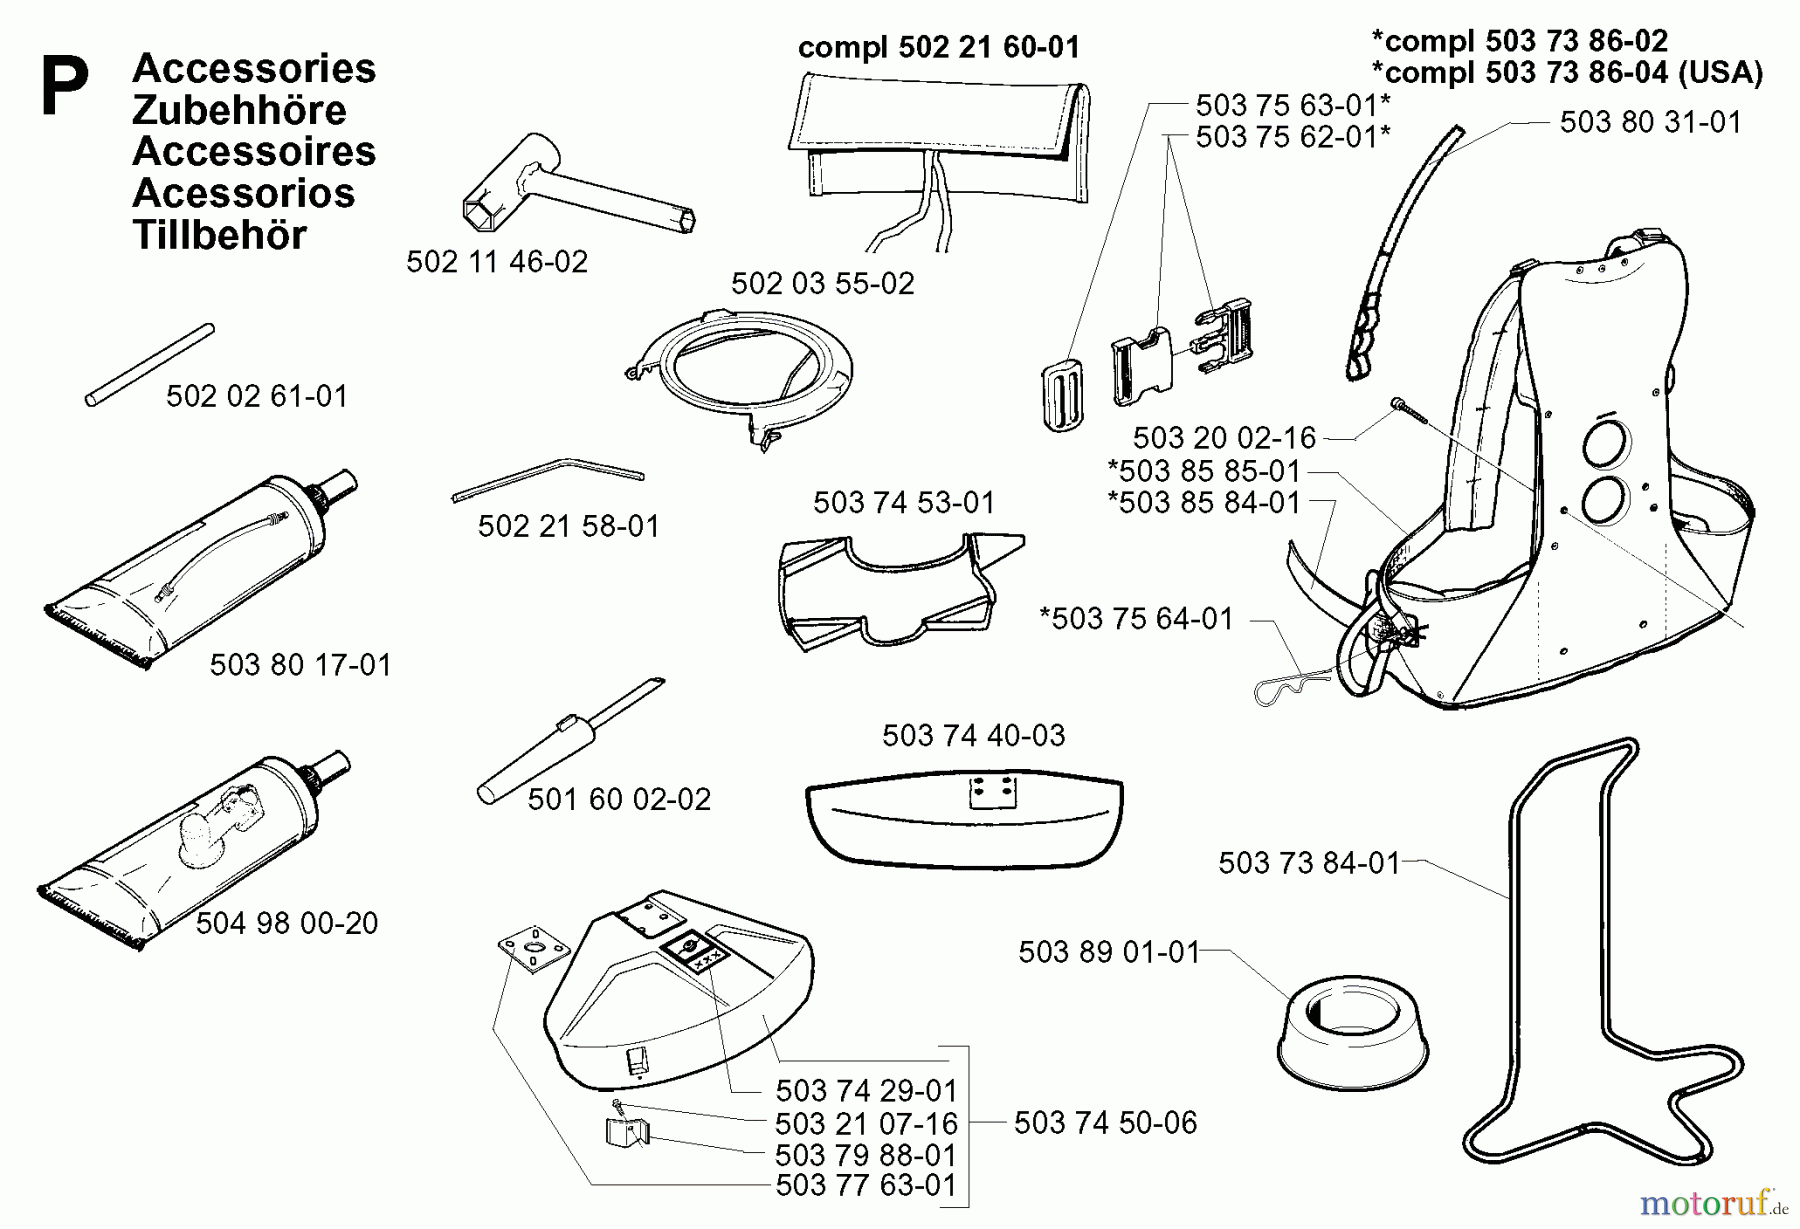  Jonsered Motorsensen, Trimmer BP2040C - Jonsered String/Brush Trimmer (2000-02) ACCESSORIES